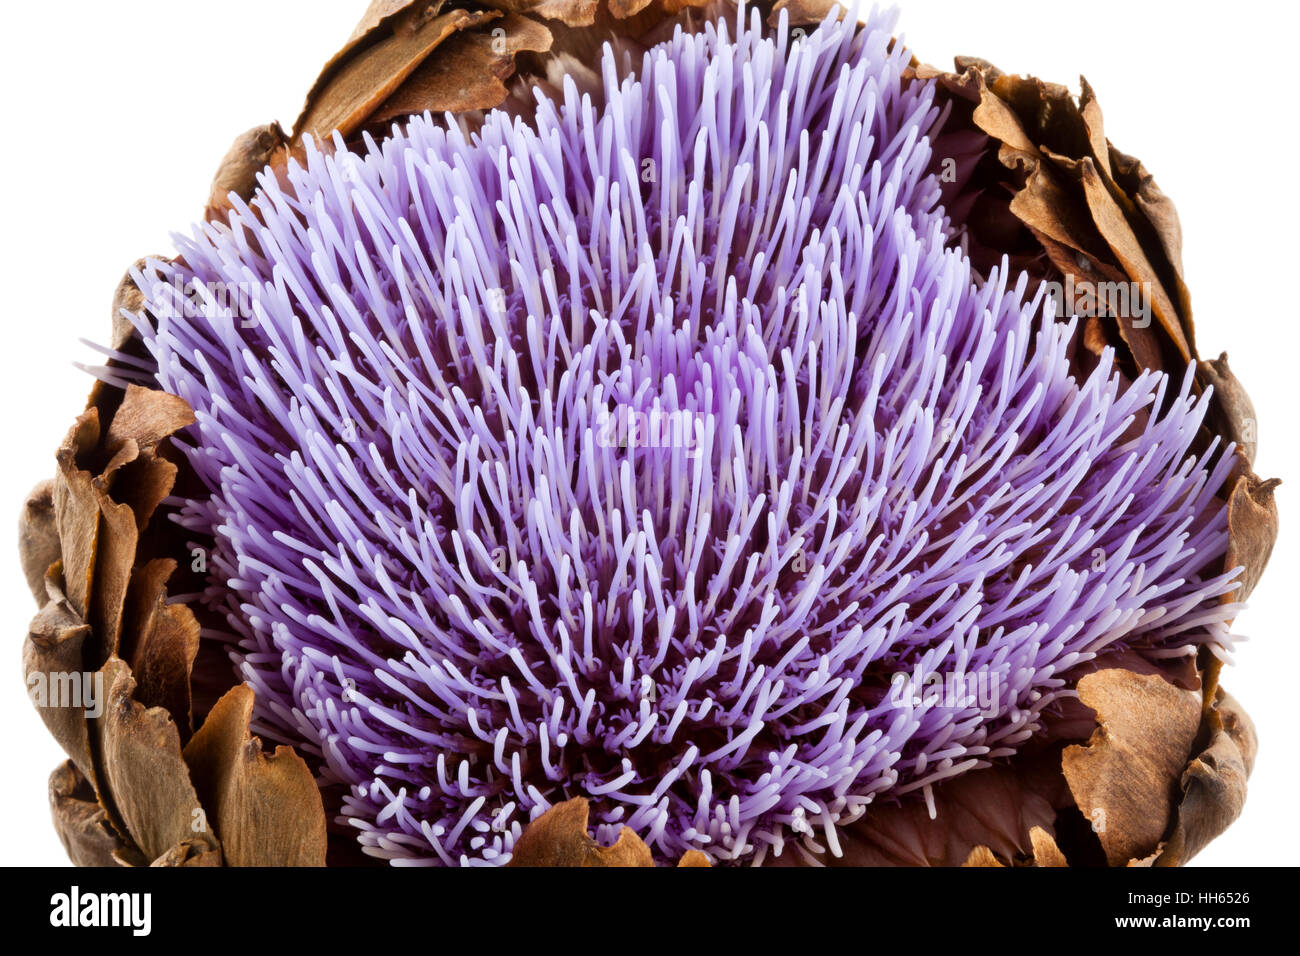 Purple flower of an Artichoke Stock Photo